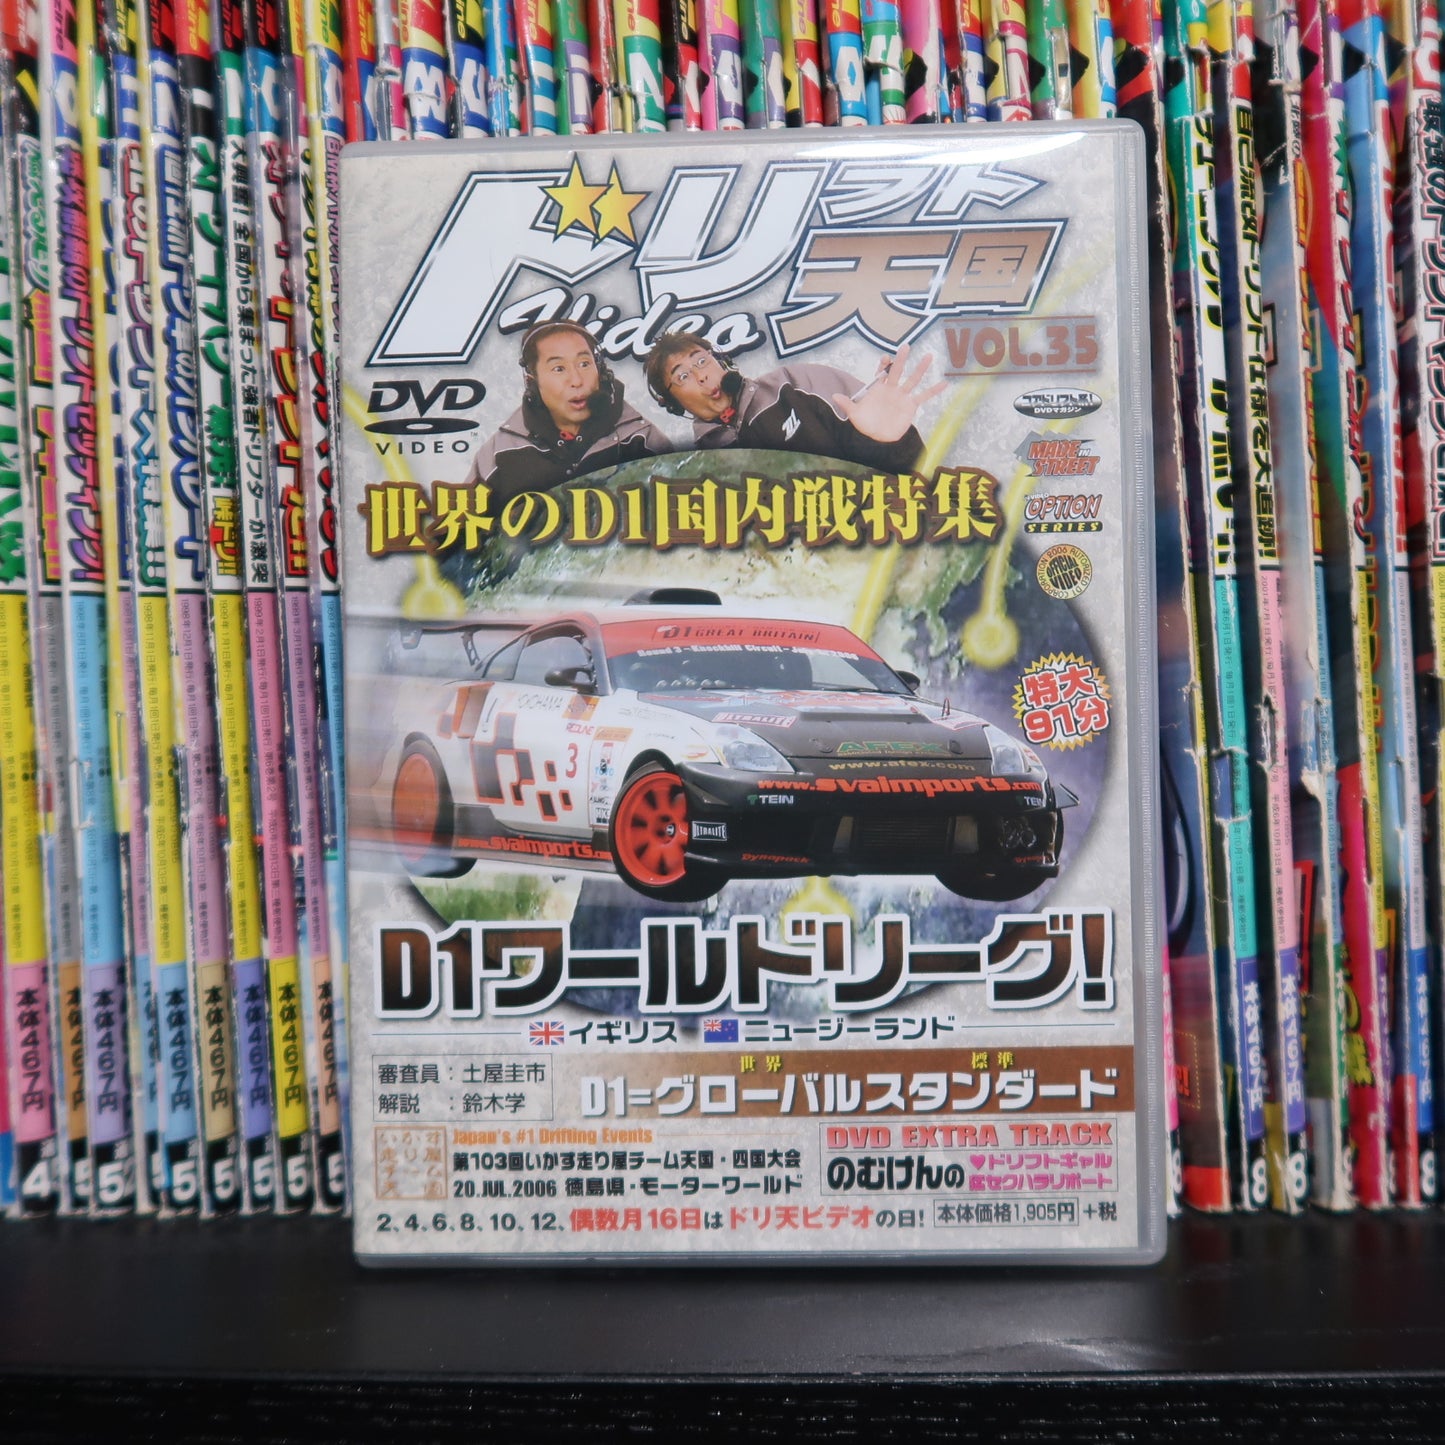 Drift Tengoku DVD Vol 35